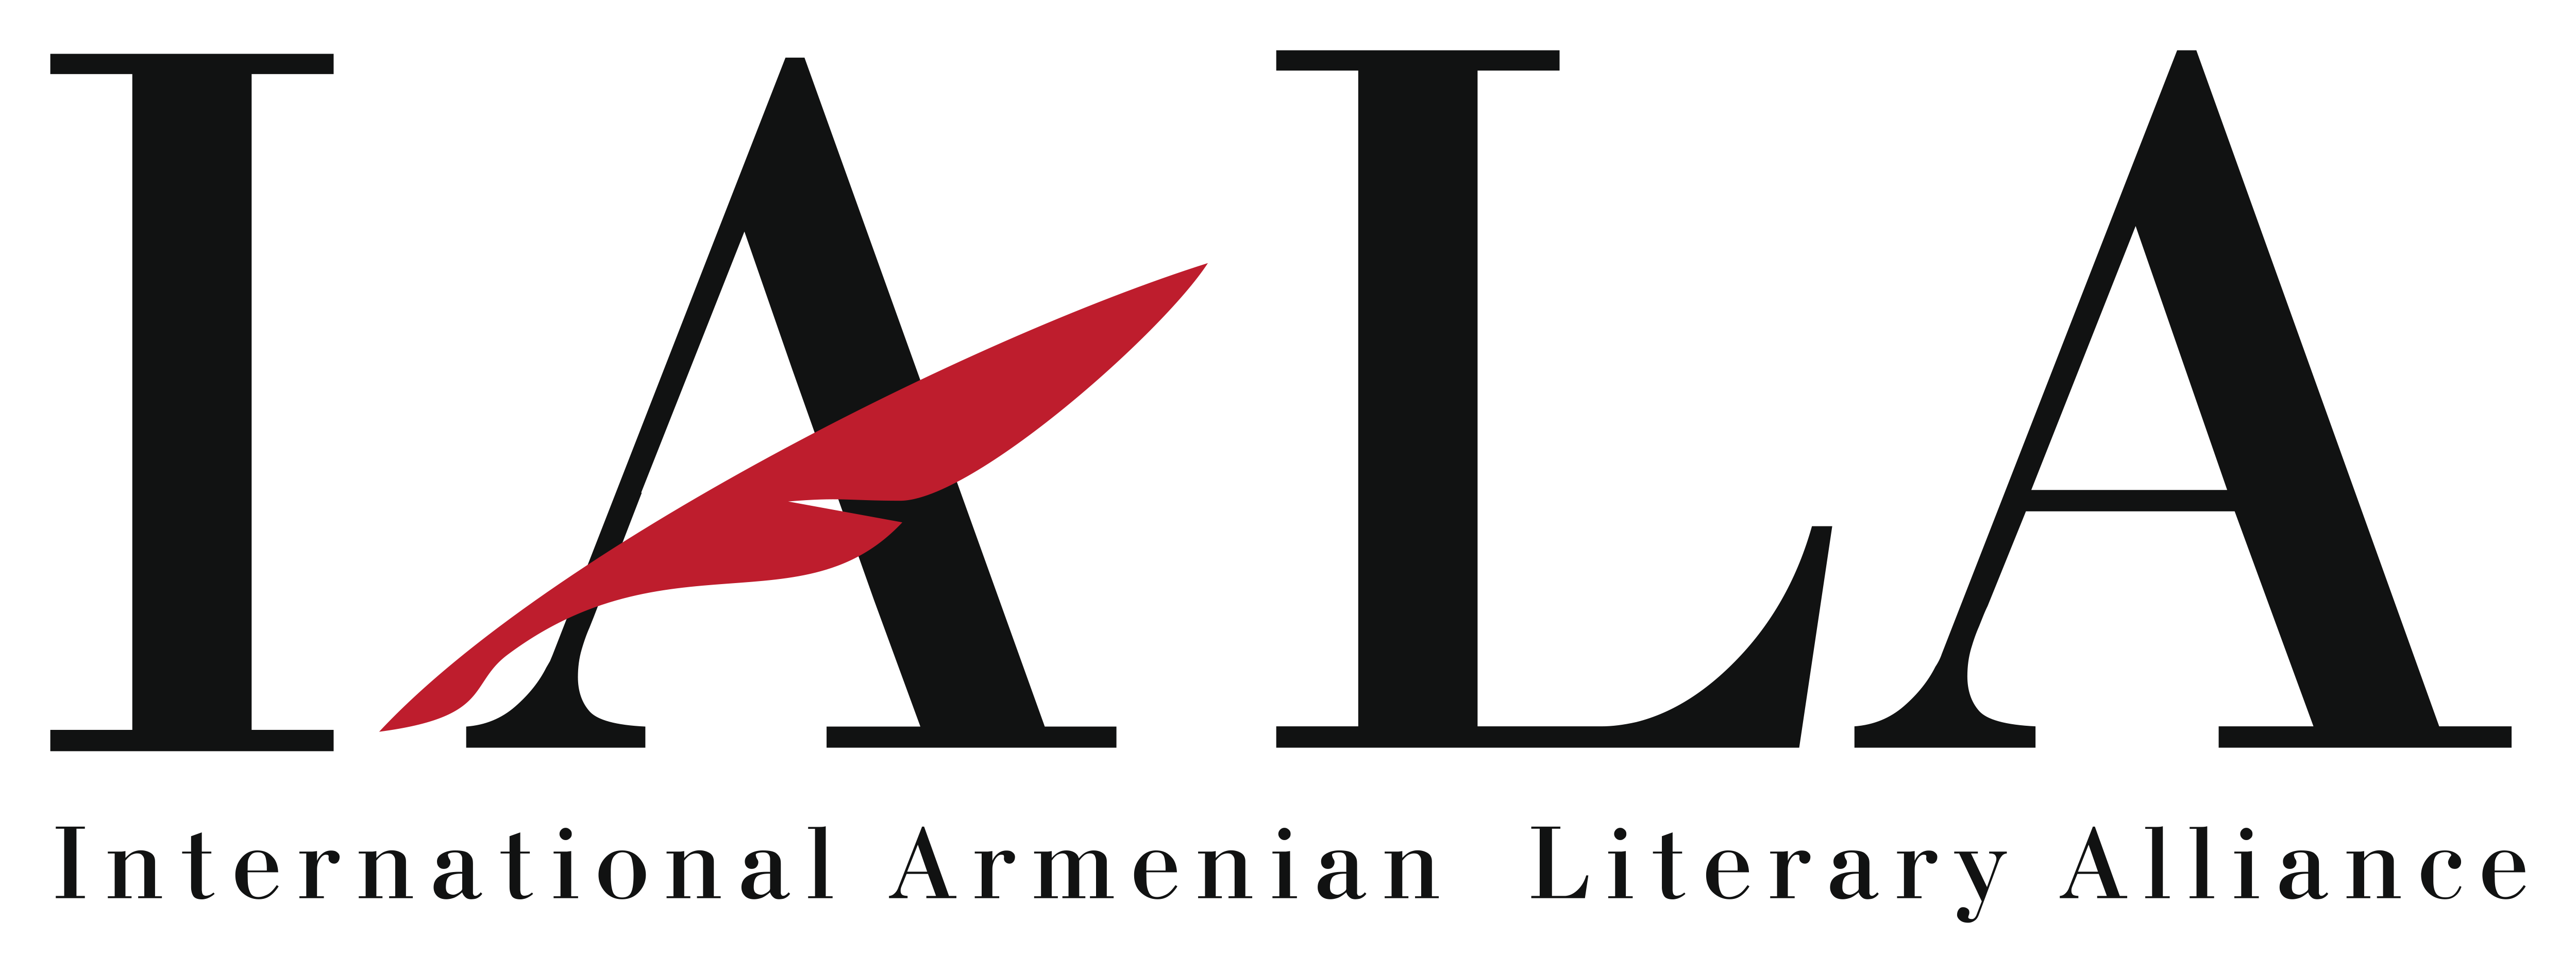 Site- ul de intalnire armenian